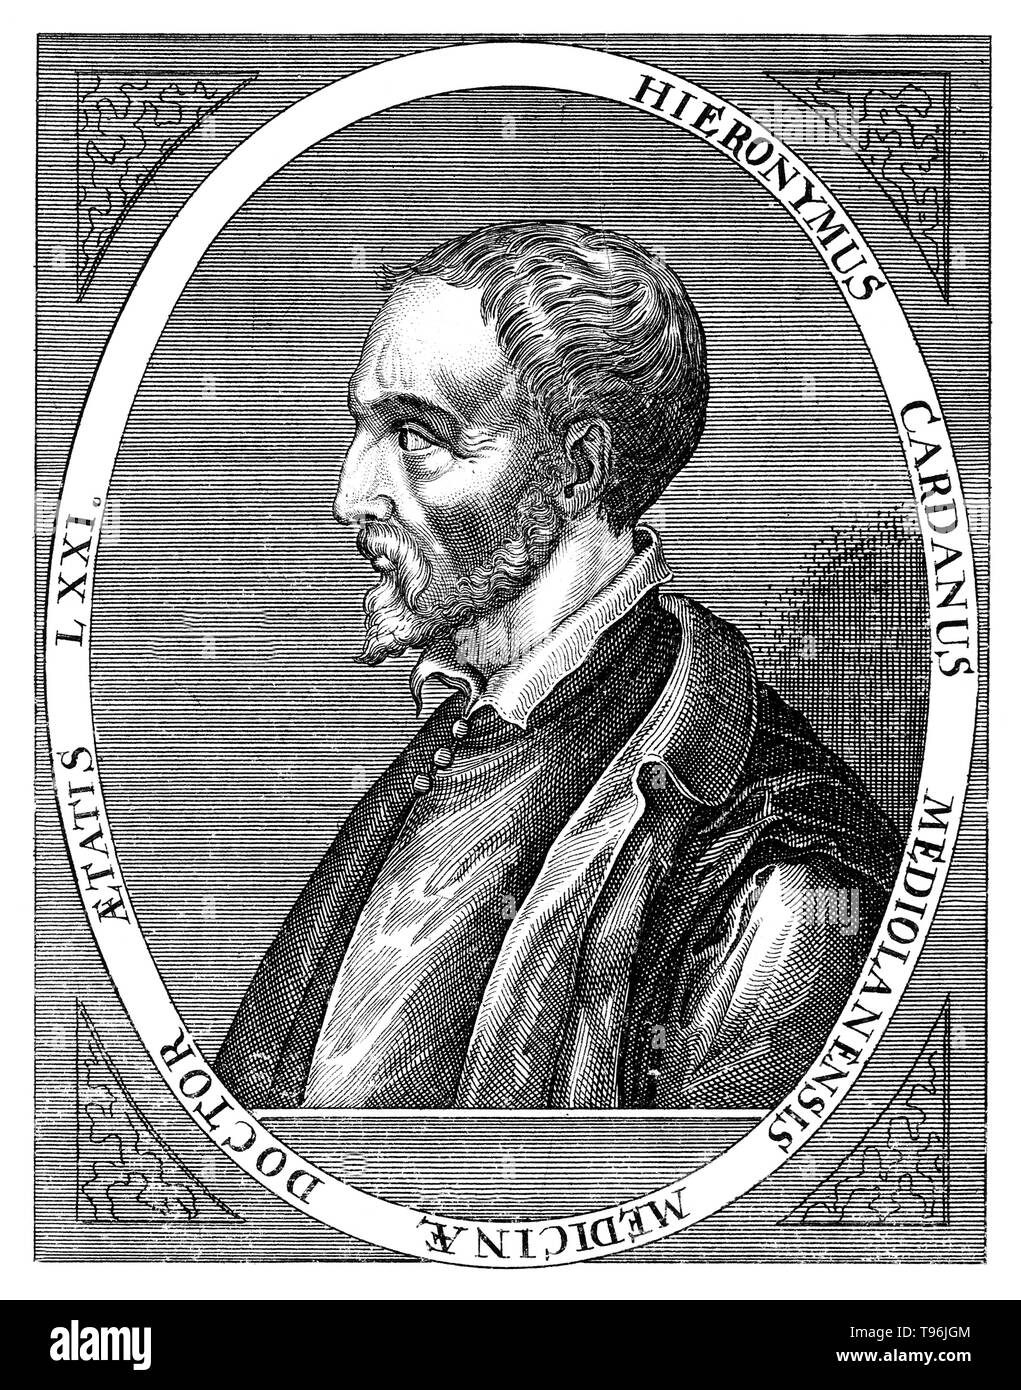 Gerolamo Cardano (24 settembre 1501 - 21 settembre 1576) era un italiano polymath, i cui interessi variava da essendo un matematico, medico, biologo, fisico, chimico, astrologo, astronomo, filosofo, scrittore e giocatore. Egli è stato uno dei più influenti matematici del Rinascimento, e fu una delle figure chiave nella fondazione di probabilità dei coefficienti binomiali e il teorema binomiale. Ha scritto più di duecento opere sulla scienza. Foto Stock